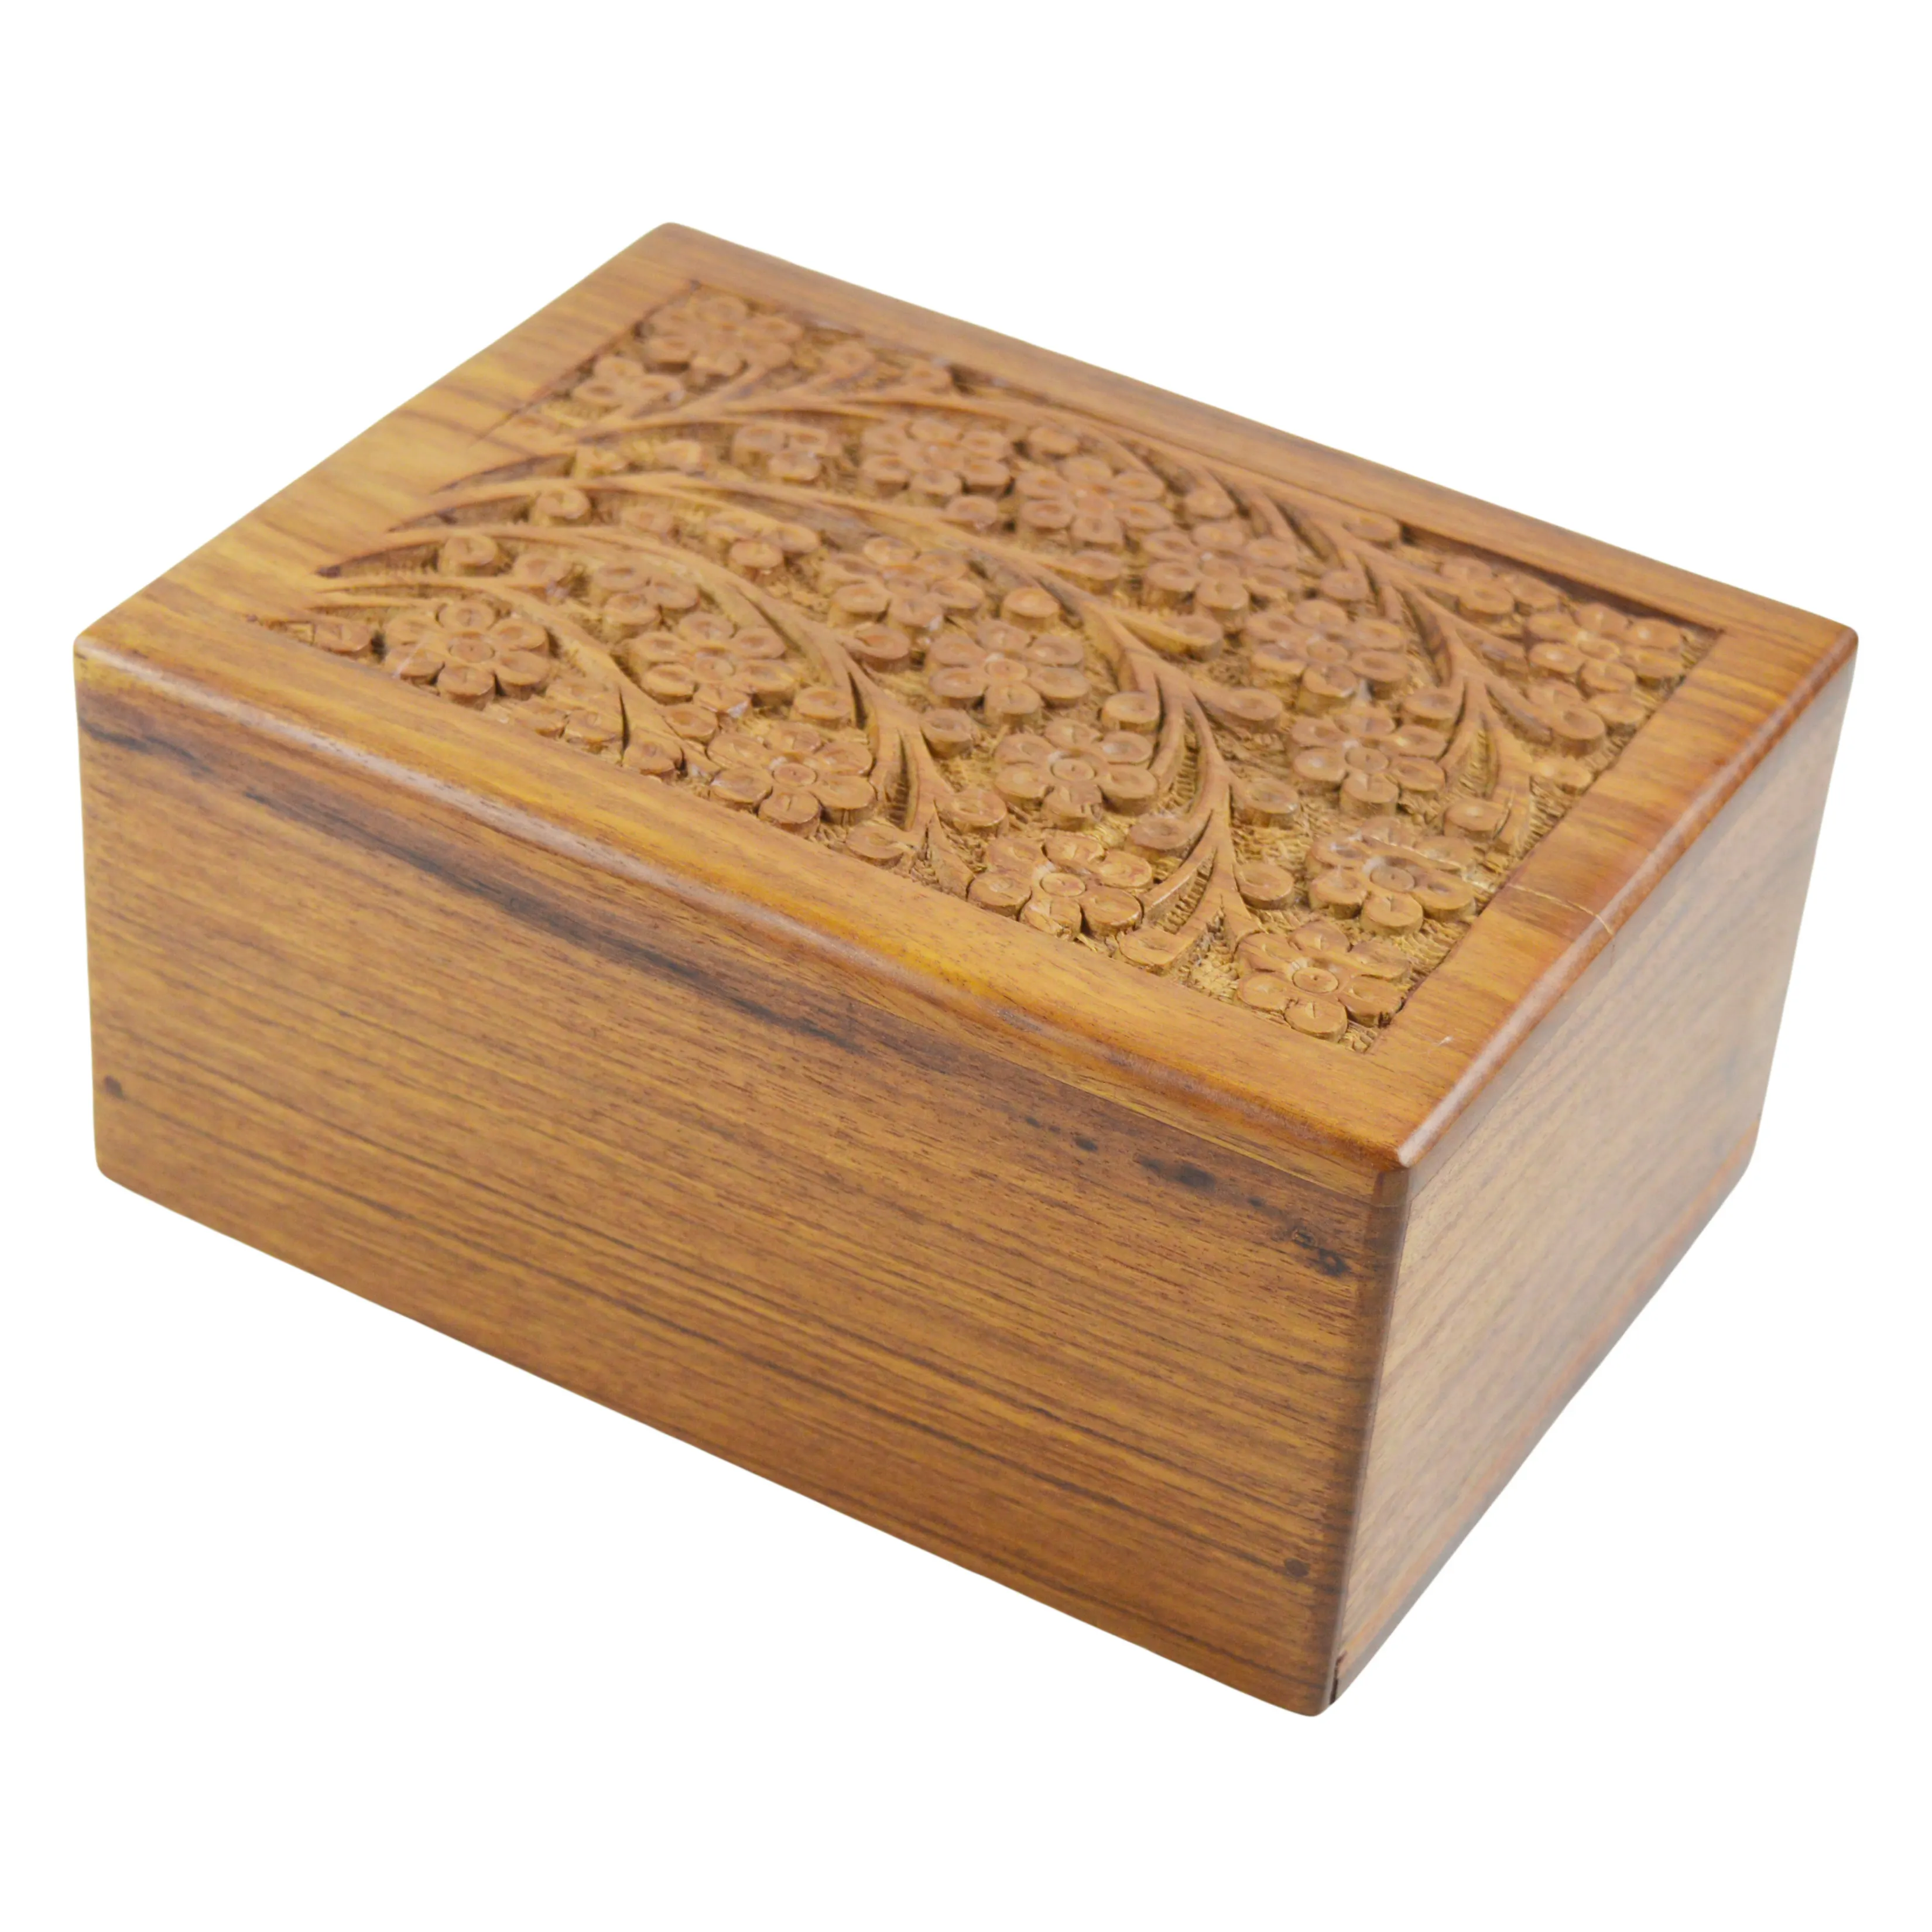 Vaso portaoggetti di design scatola in legno massello a prezzo all'ingrosso ideale per contenitori per la conservazione di frutta secca e contenitori per la conservazione di caramelle